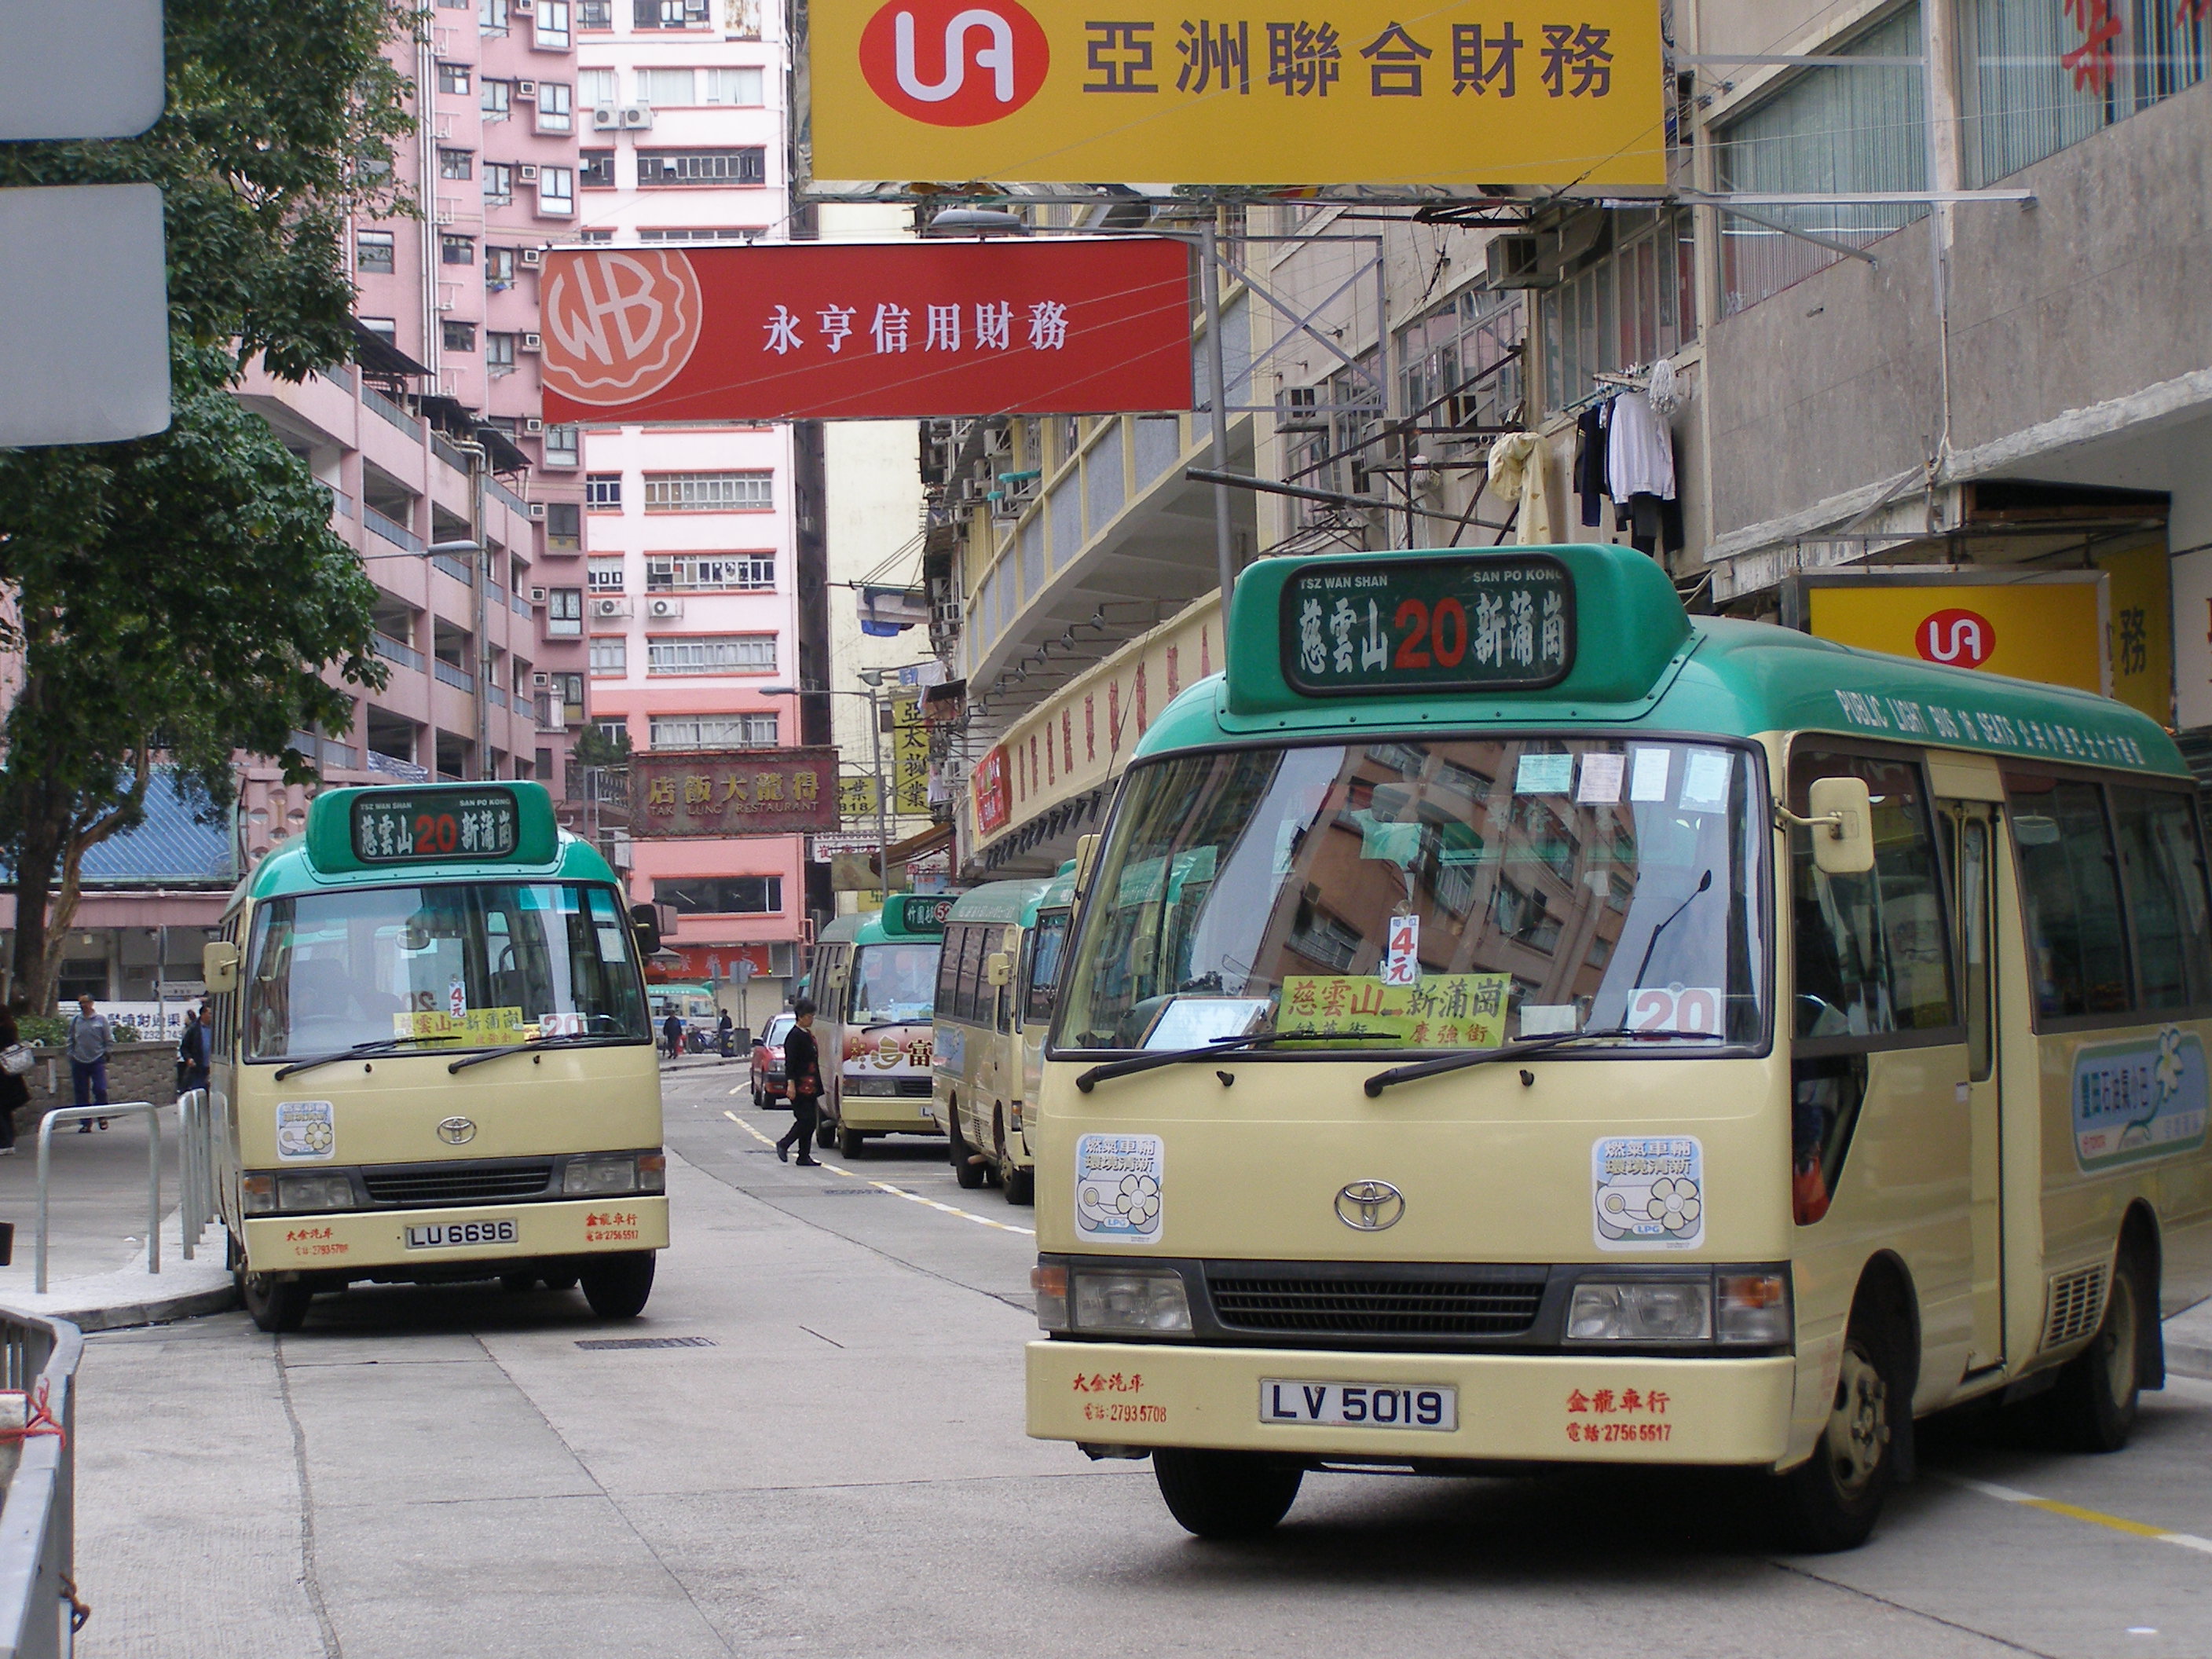 緑のミニバスは香港中をチョロチョロ走りまわる。〔8〕1Aは界線の港、西貢への快速ルート。〔24〕87Aはコンテナターミナル地区の路線。車窓は赤青緑の鉄の箱ばかり。